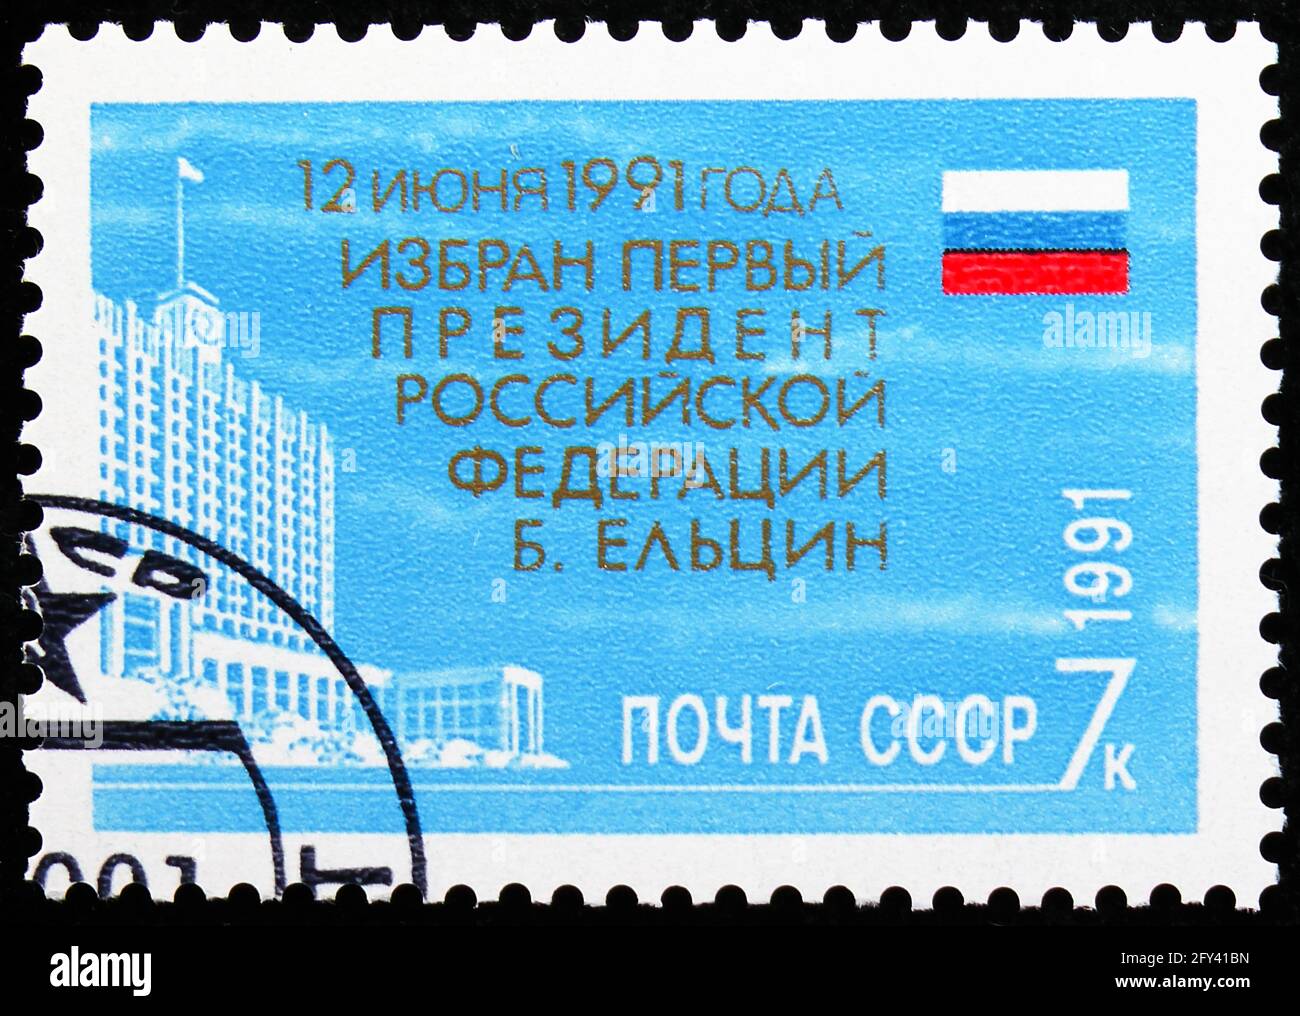 MOSKAU, RUSSLAND - 31. AUGUST 2019: Briefmarke gedruckt in der Sowjetunion (Russland) zur Wahl von Boris Jeltsin zum Präsidenten der Russischen Föderation, Mile Stockfoto